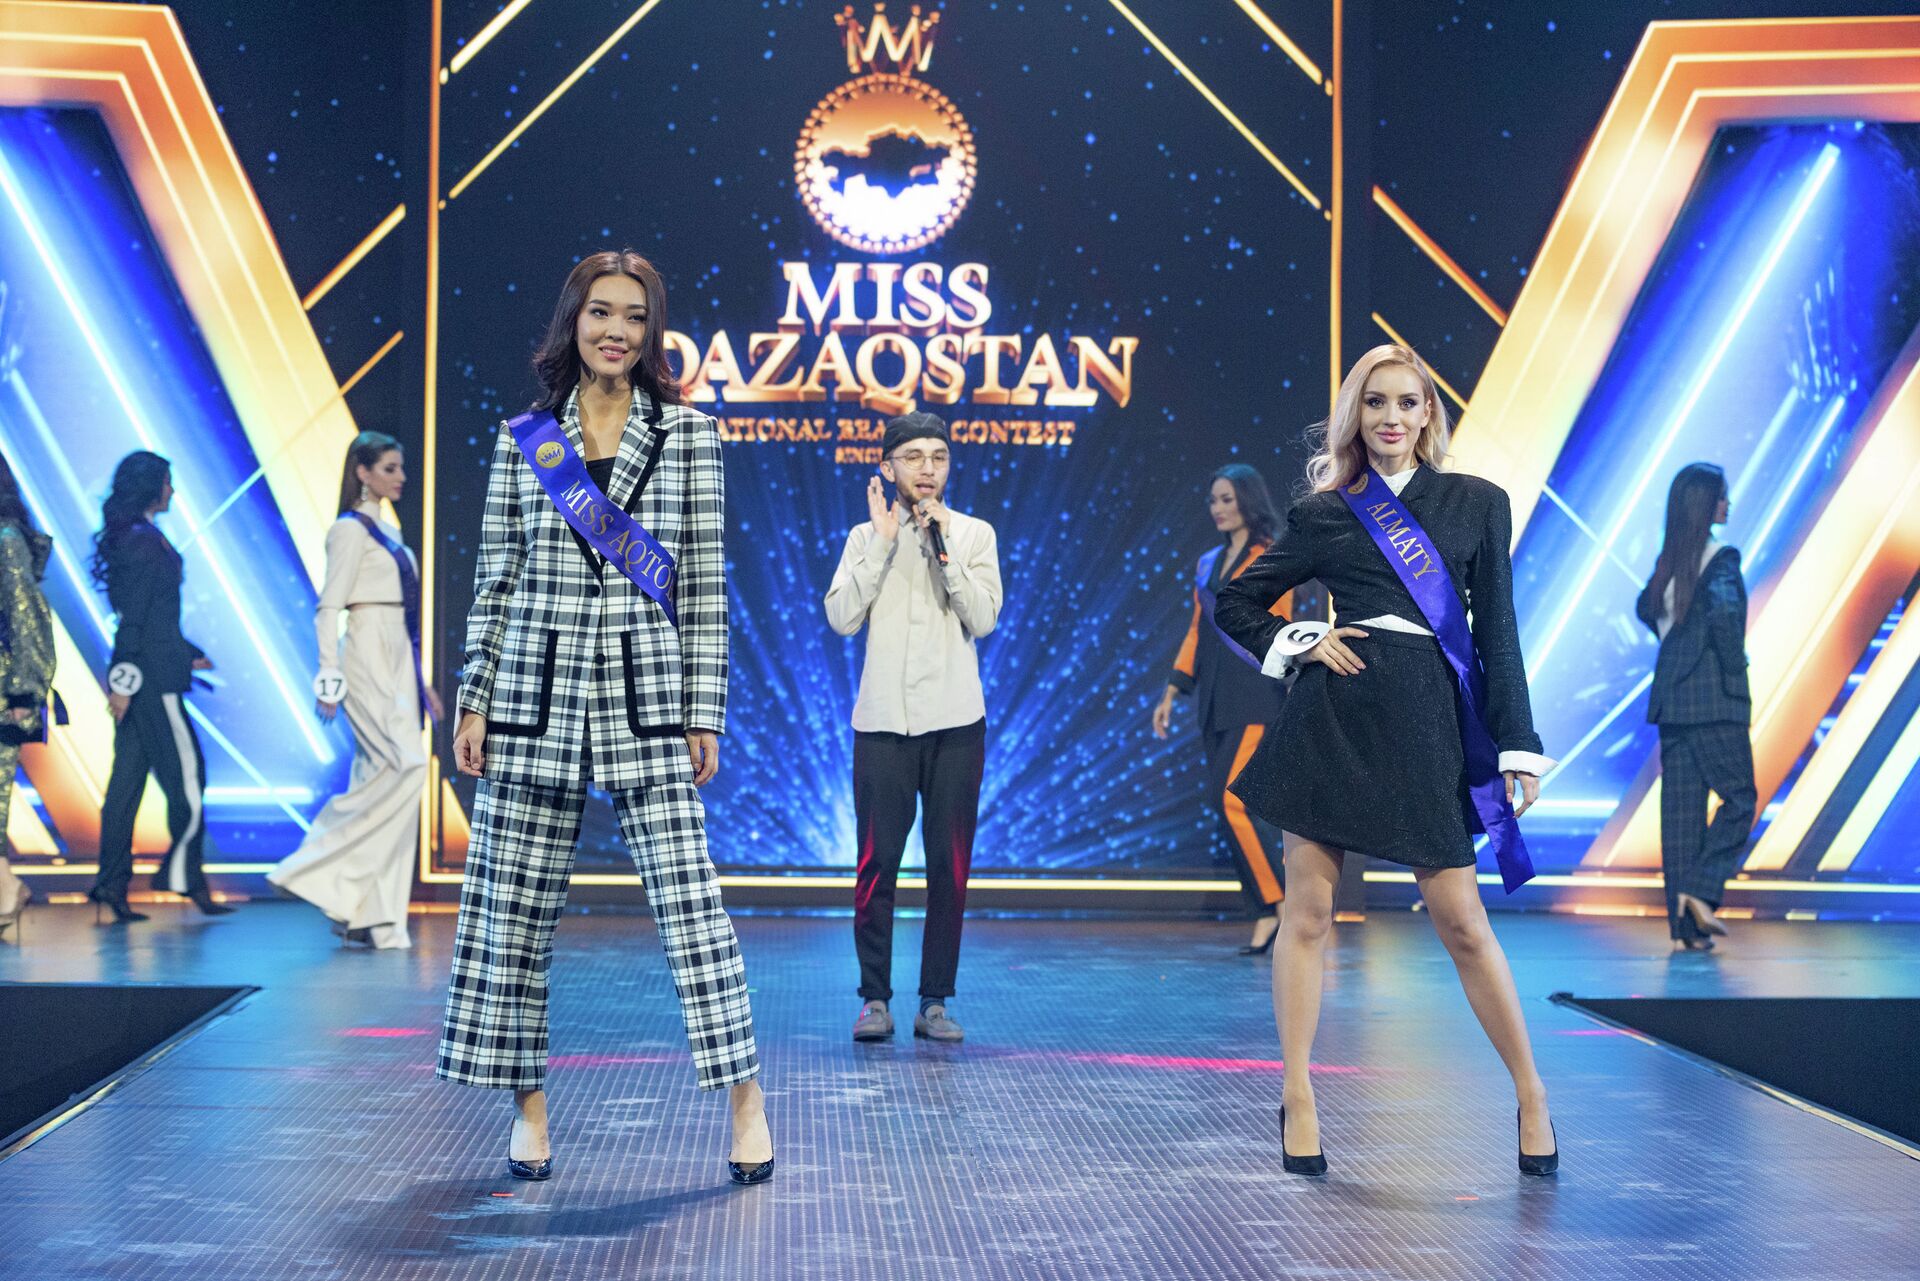 Хотим нести людям радость: почему выбрали сразу трех Мисс Казахстан - Sputnik Казахстан, 1920, 17.11.2021